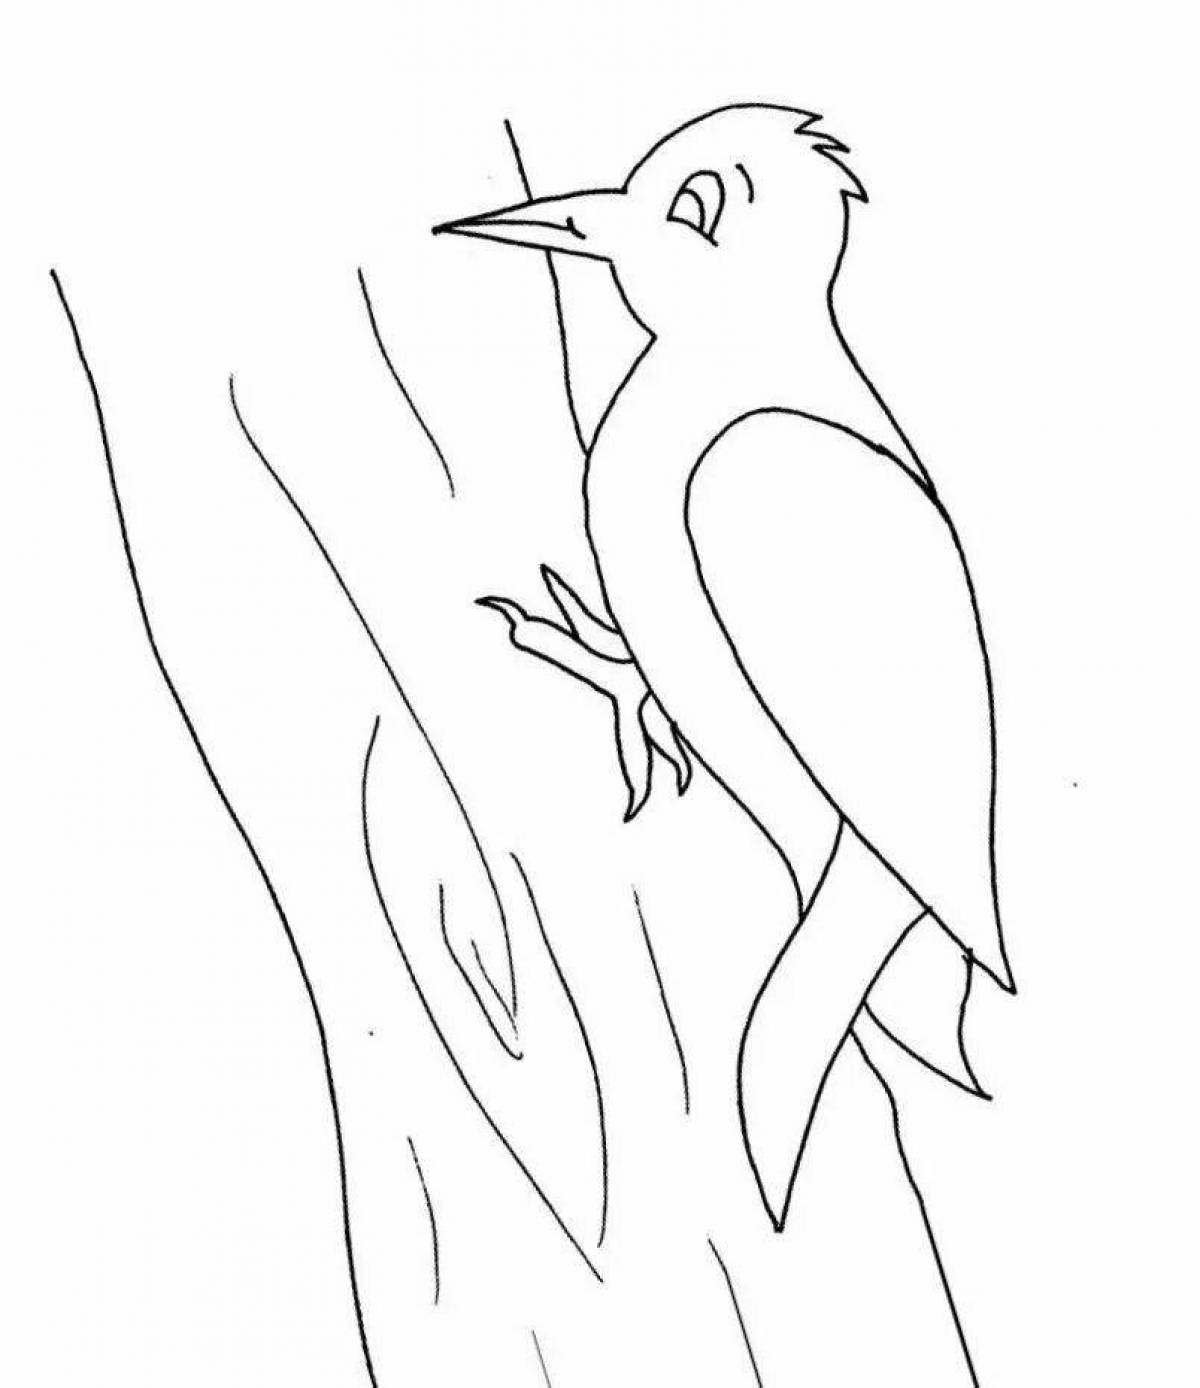 Woodpecker in tree #2